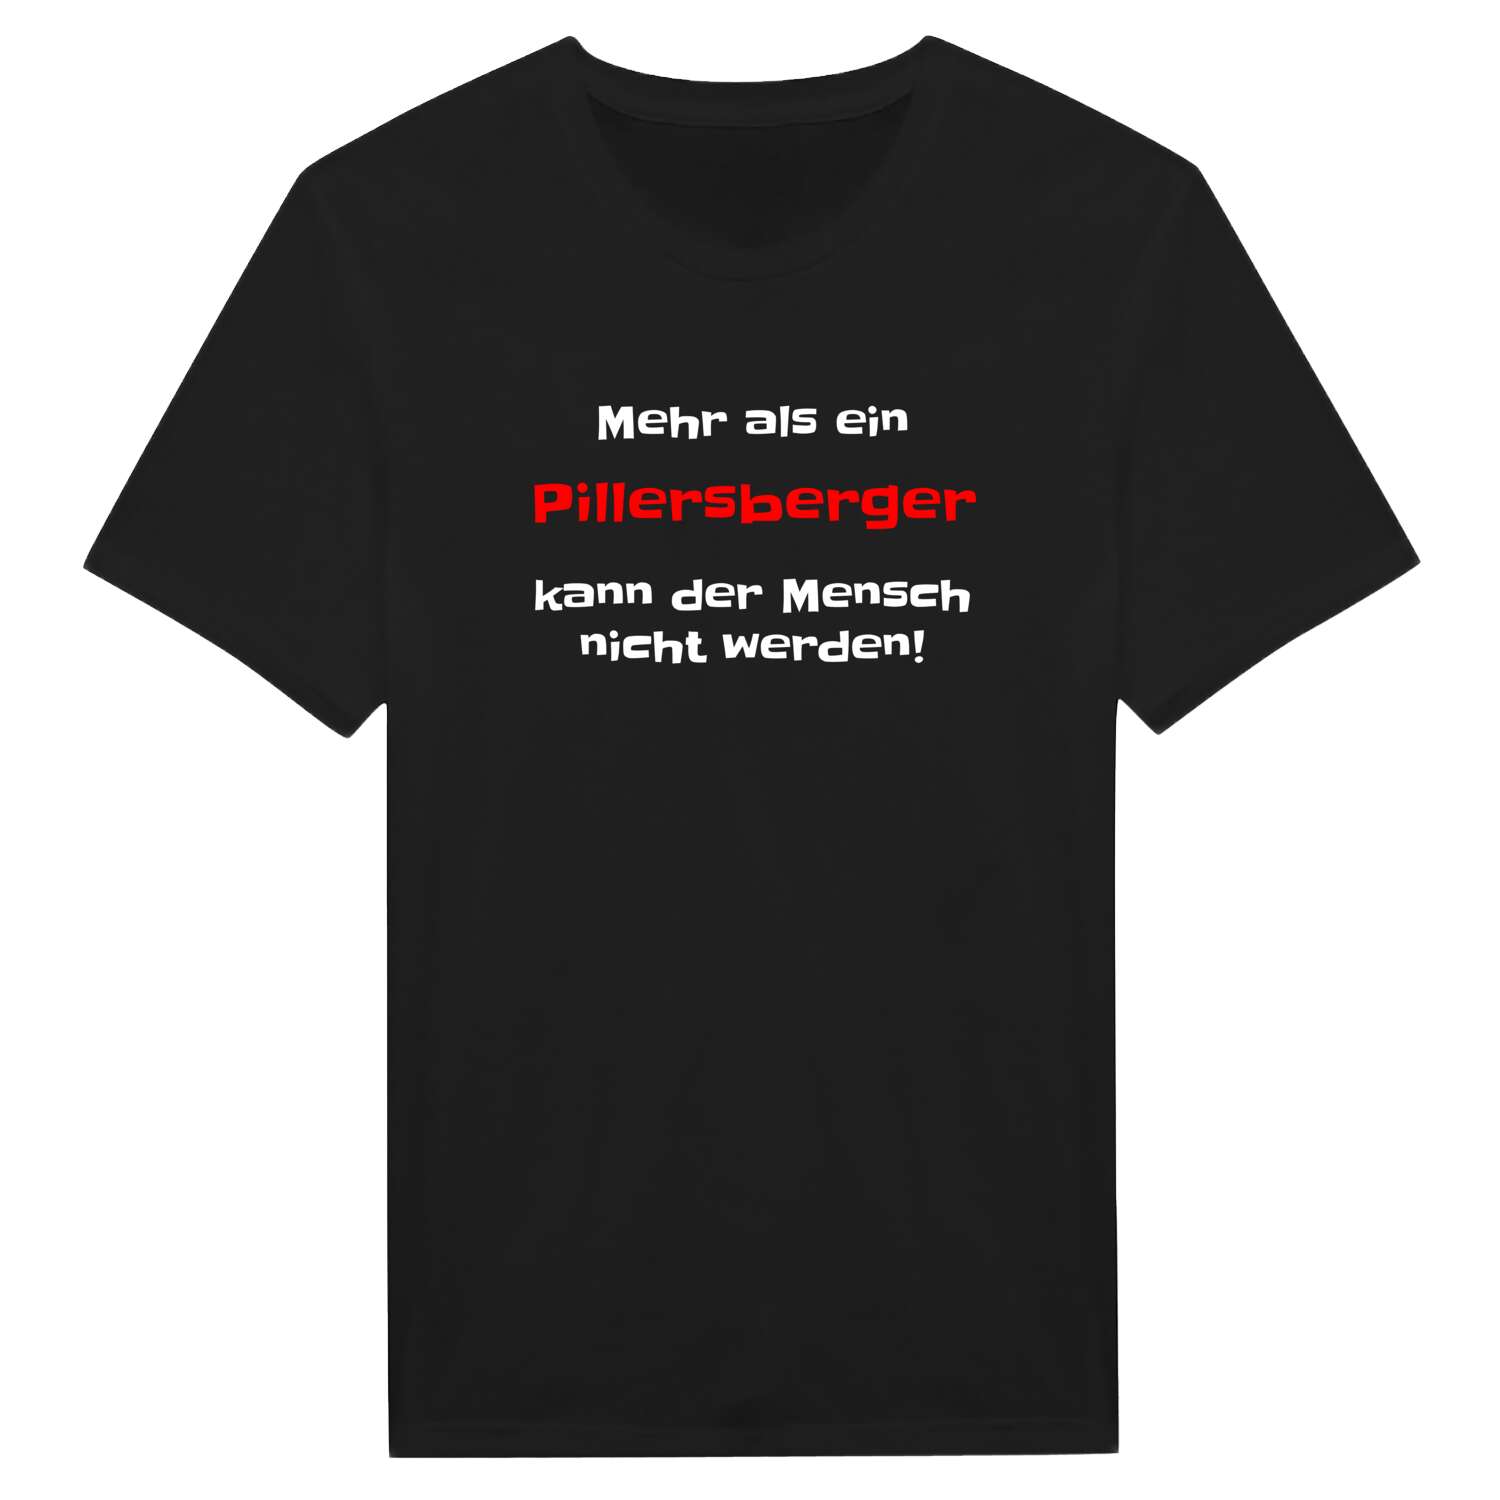 Pillersberg T-Shirt »Mehr als ein«